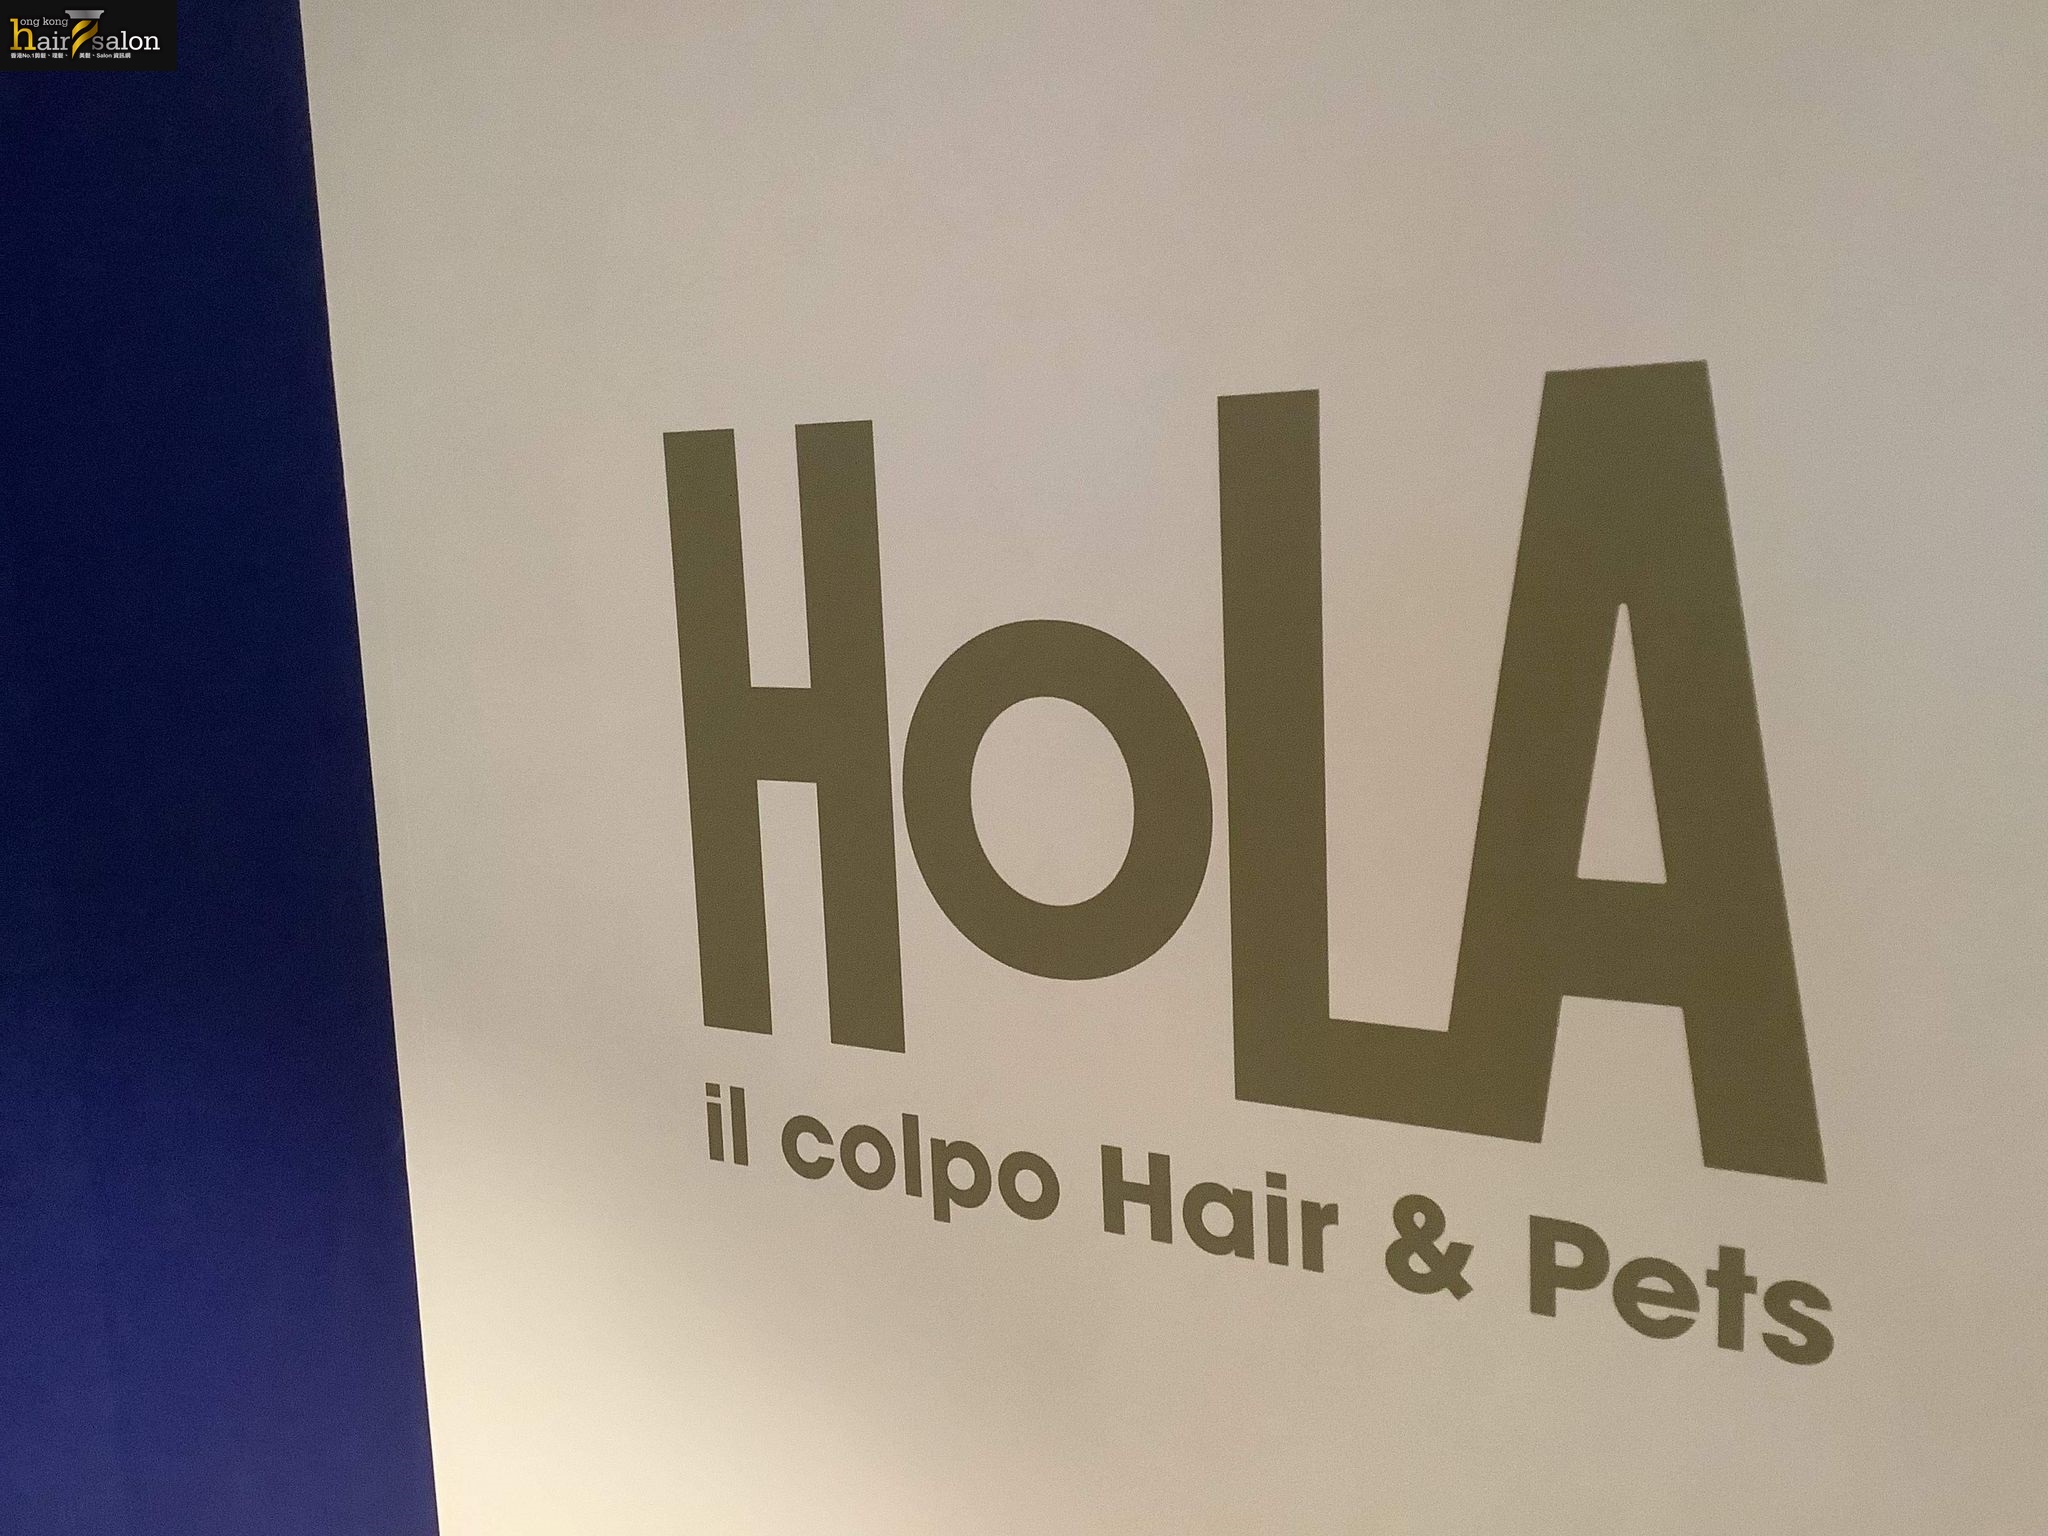 電髮/負離子: Hola il Colpo hairs & pets